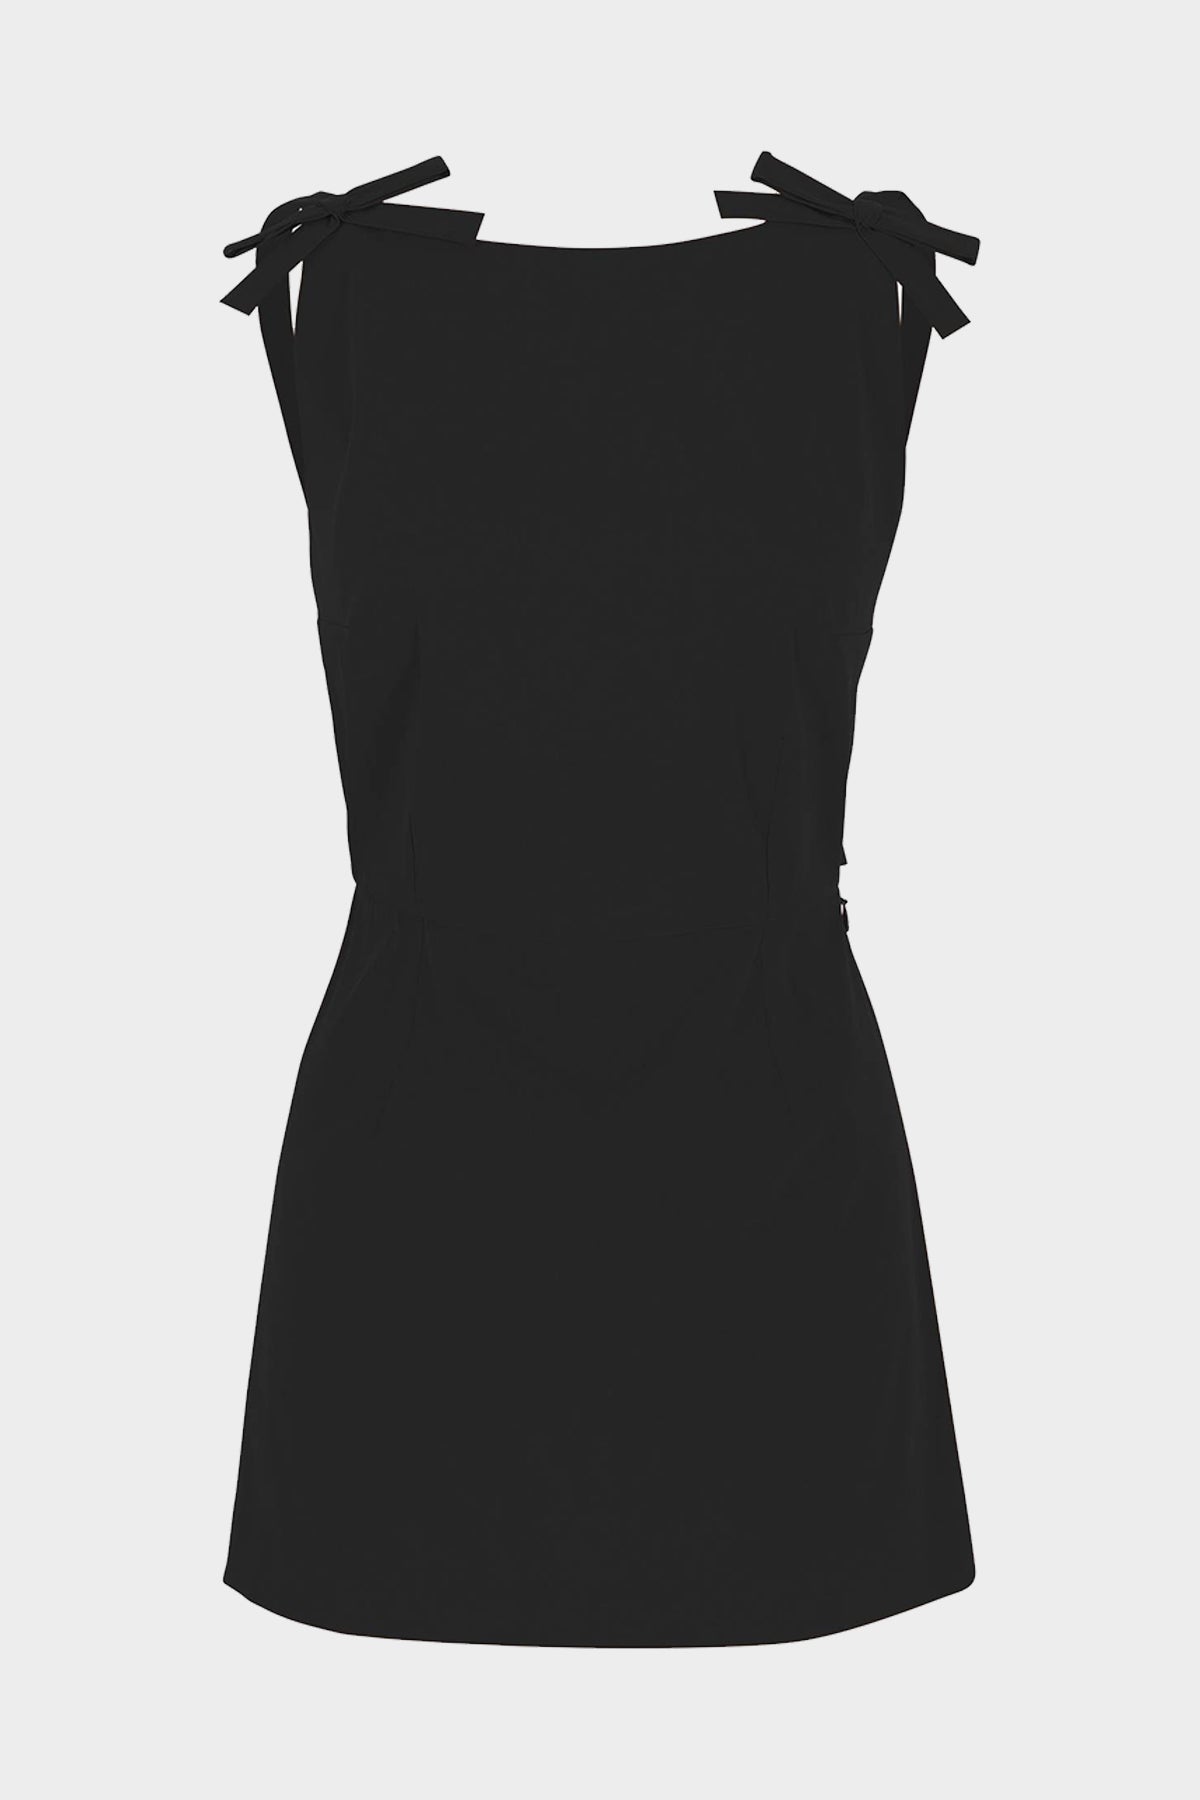 Kim Mini Dress in Black - shop-olivia.com